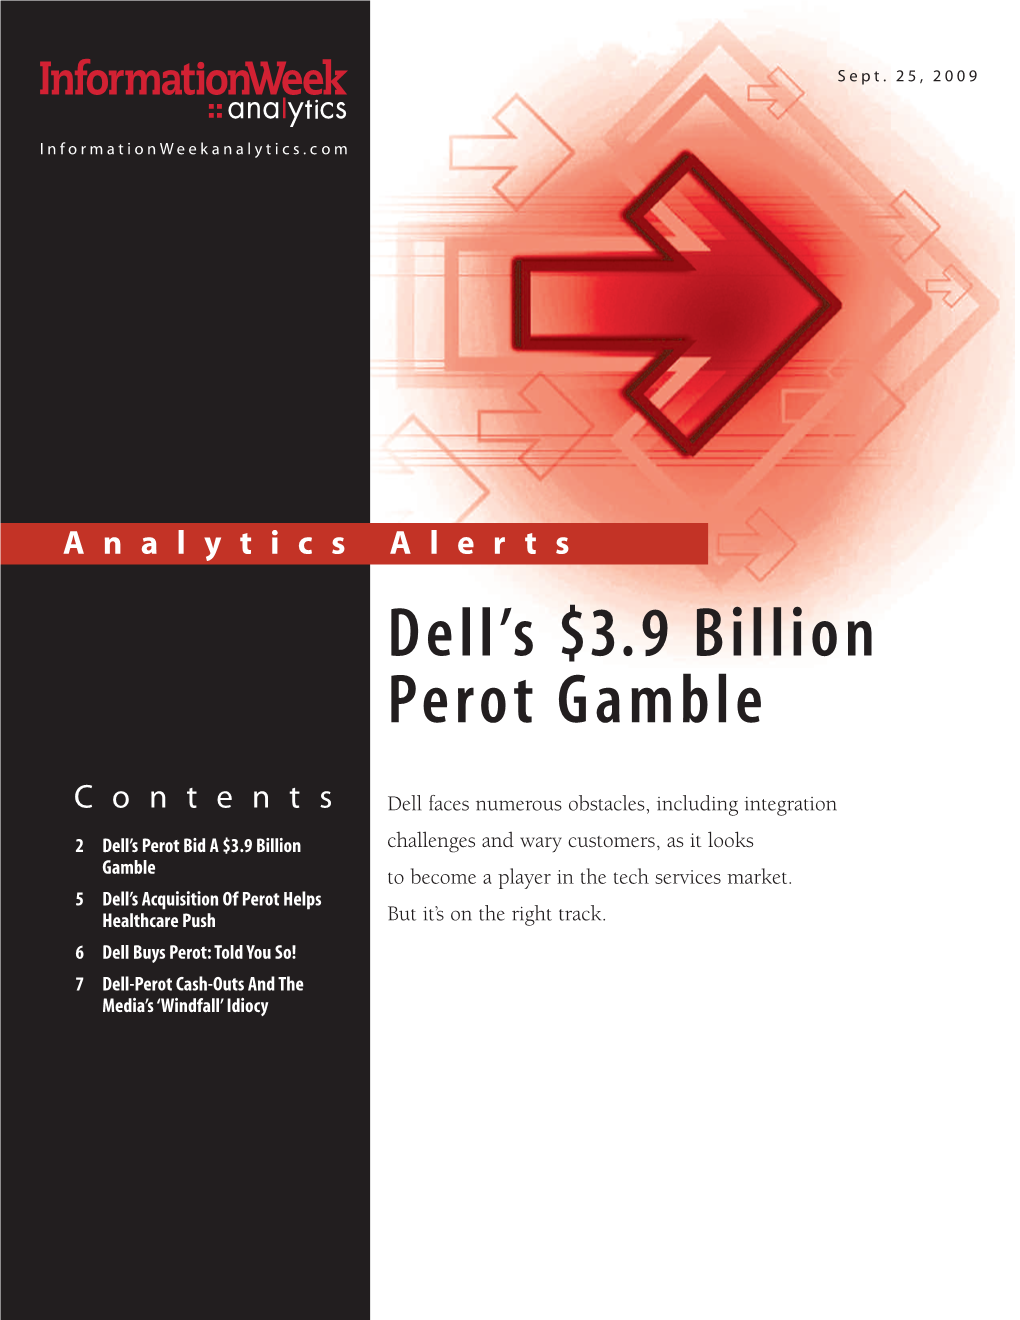 Dell's $3.9 Billion Perot Gamble